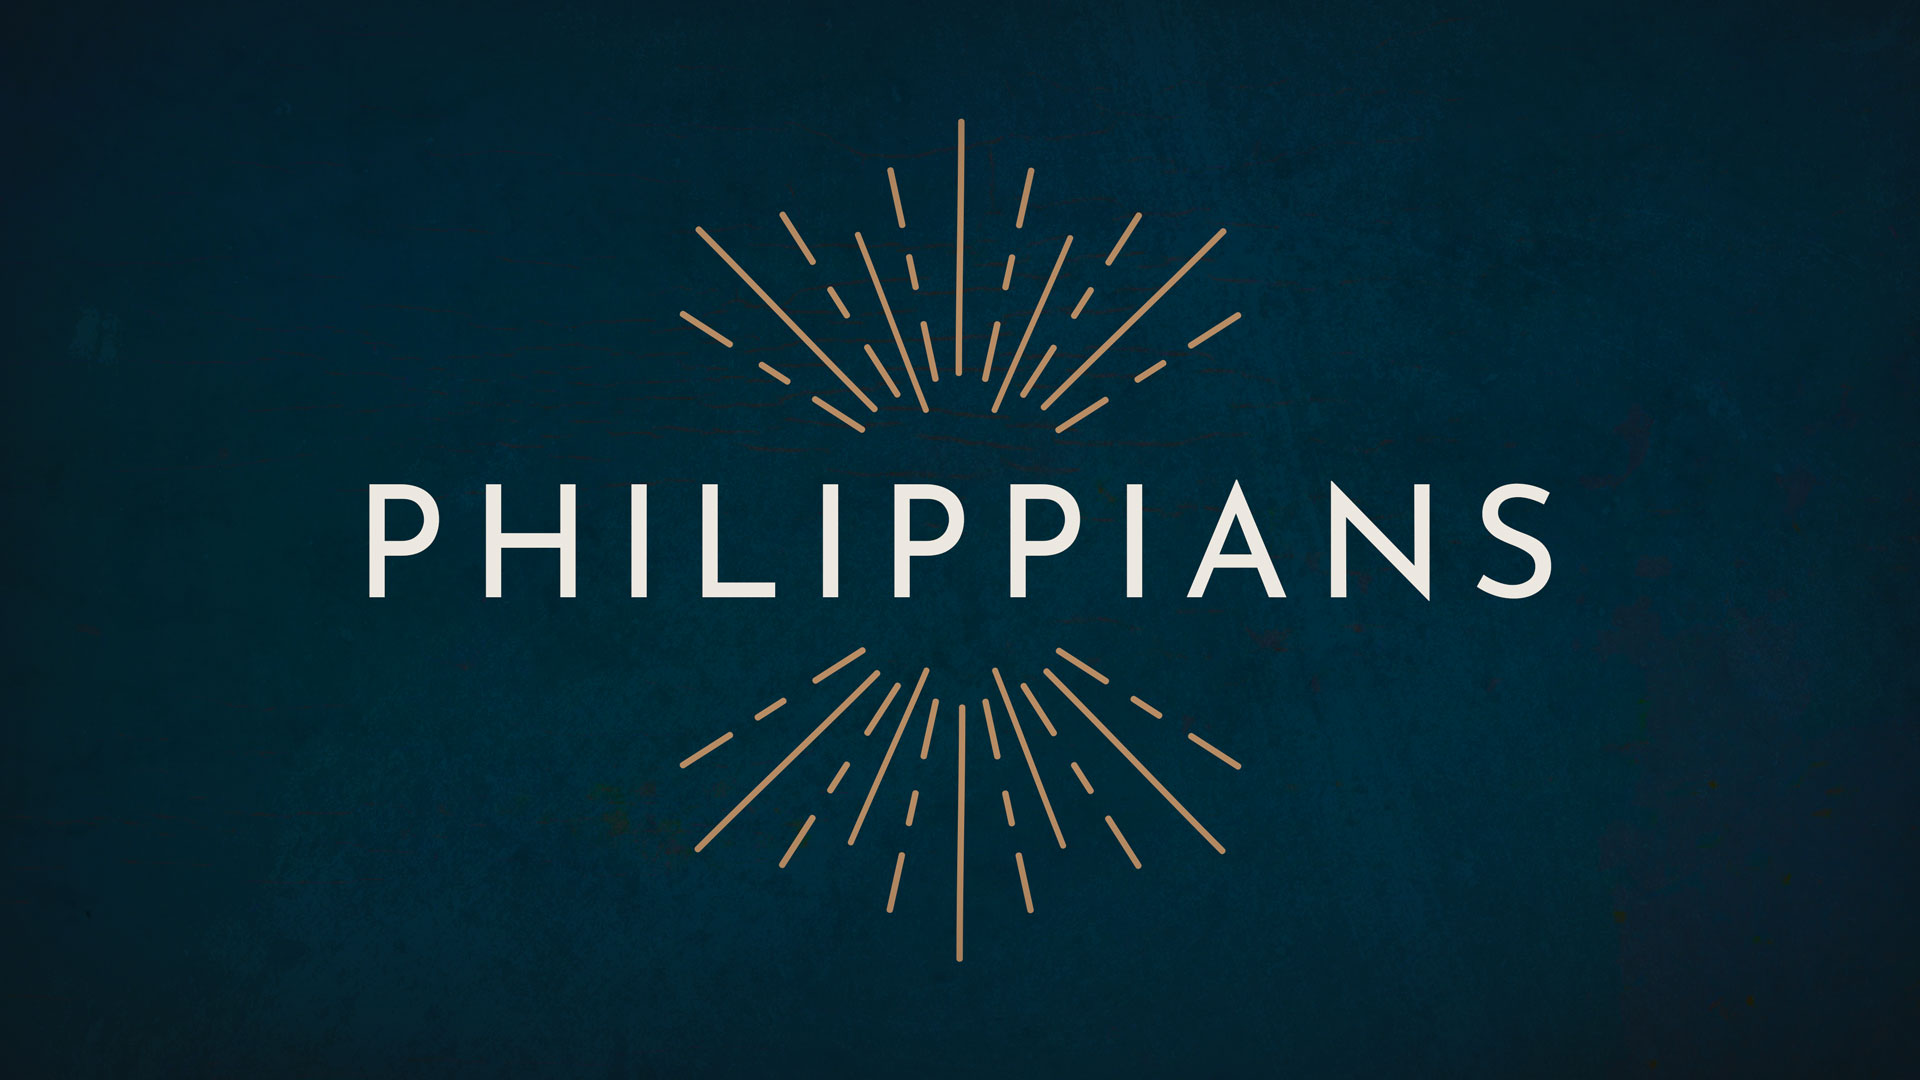 Philippians graphic